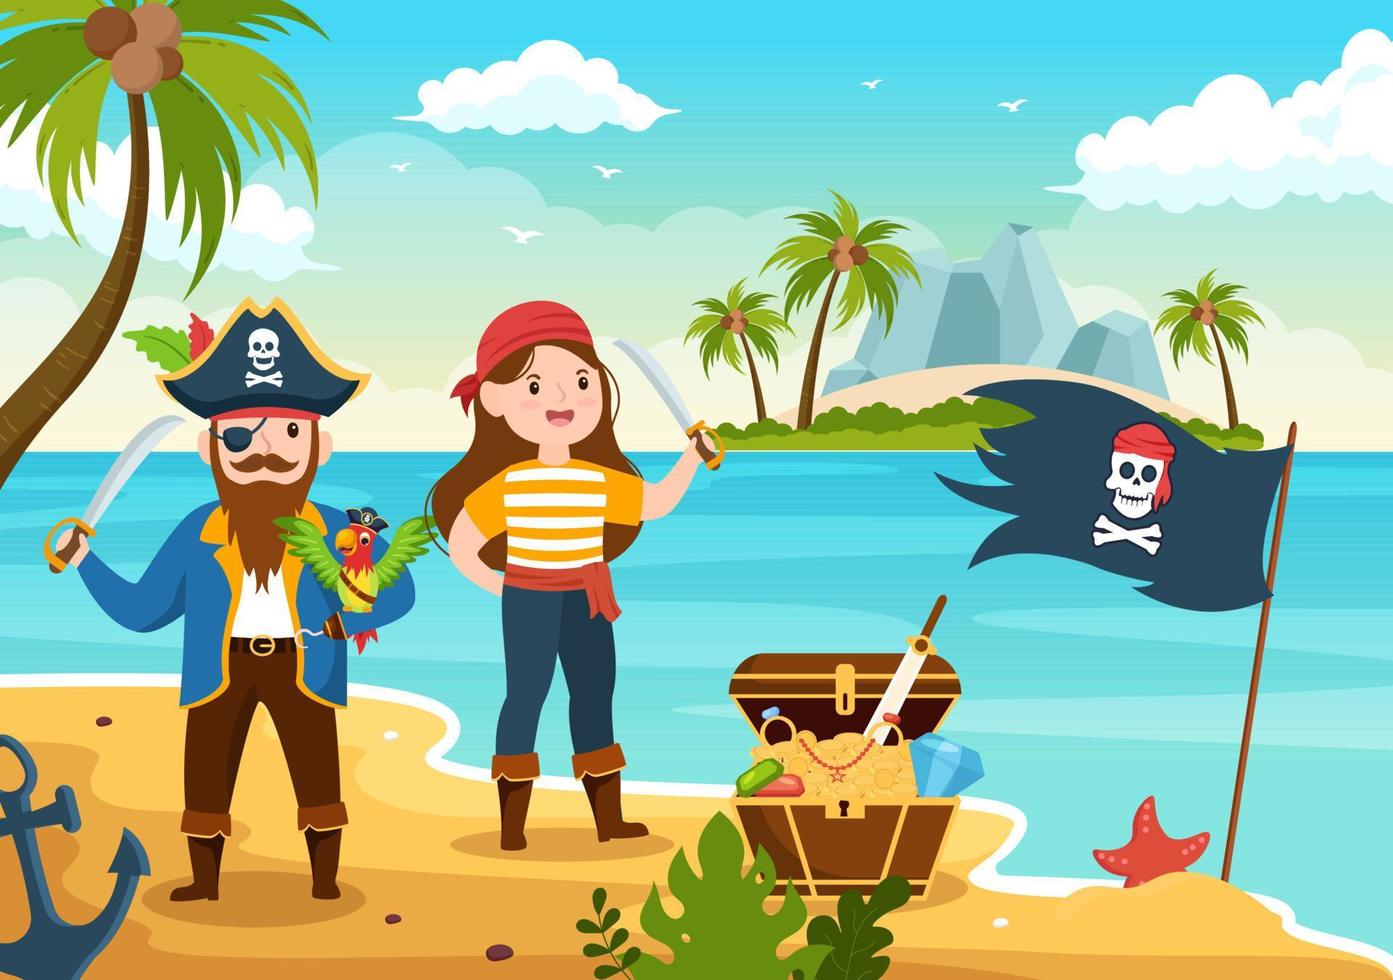 schattige piraat cartoon karakter illustratie met houten wiel, borst, vintage Caribisch gebied, piraten en vrolijke roger op schip op zee of eiland vector